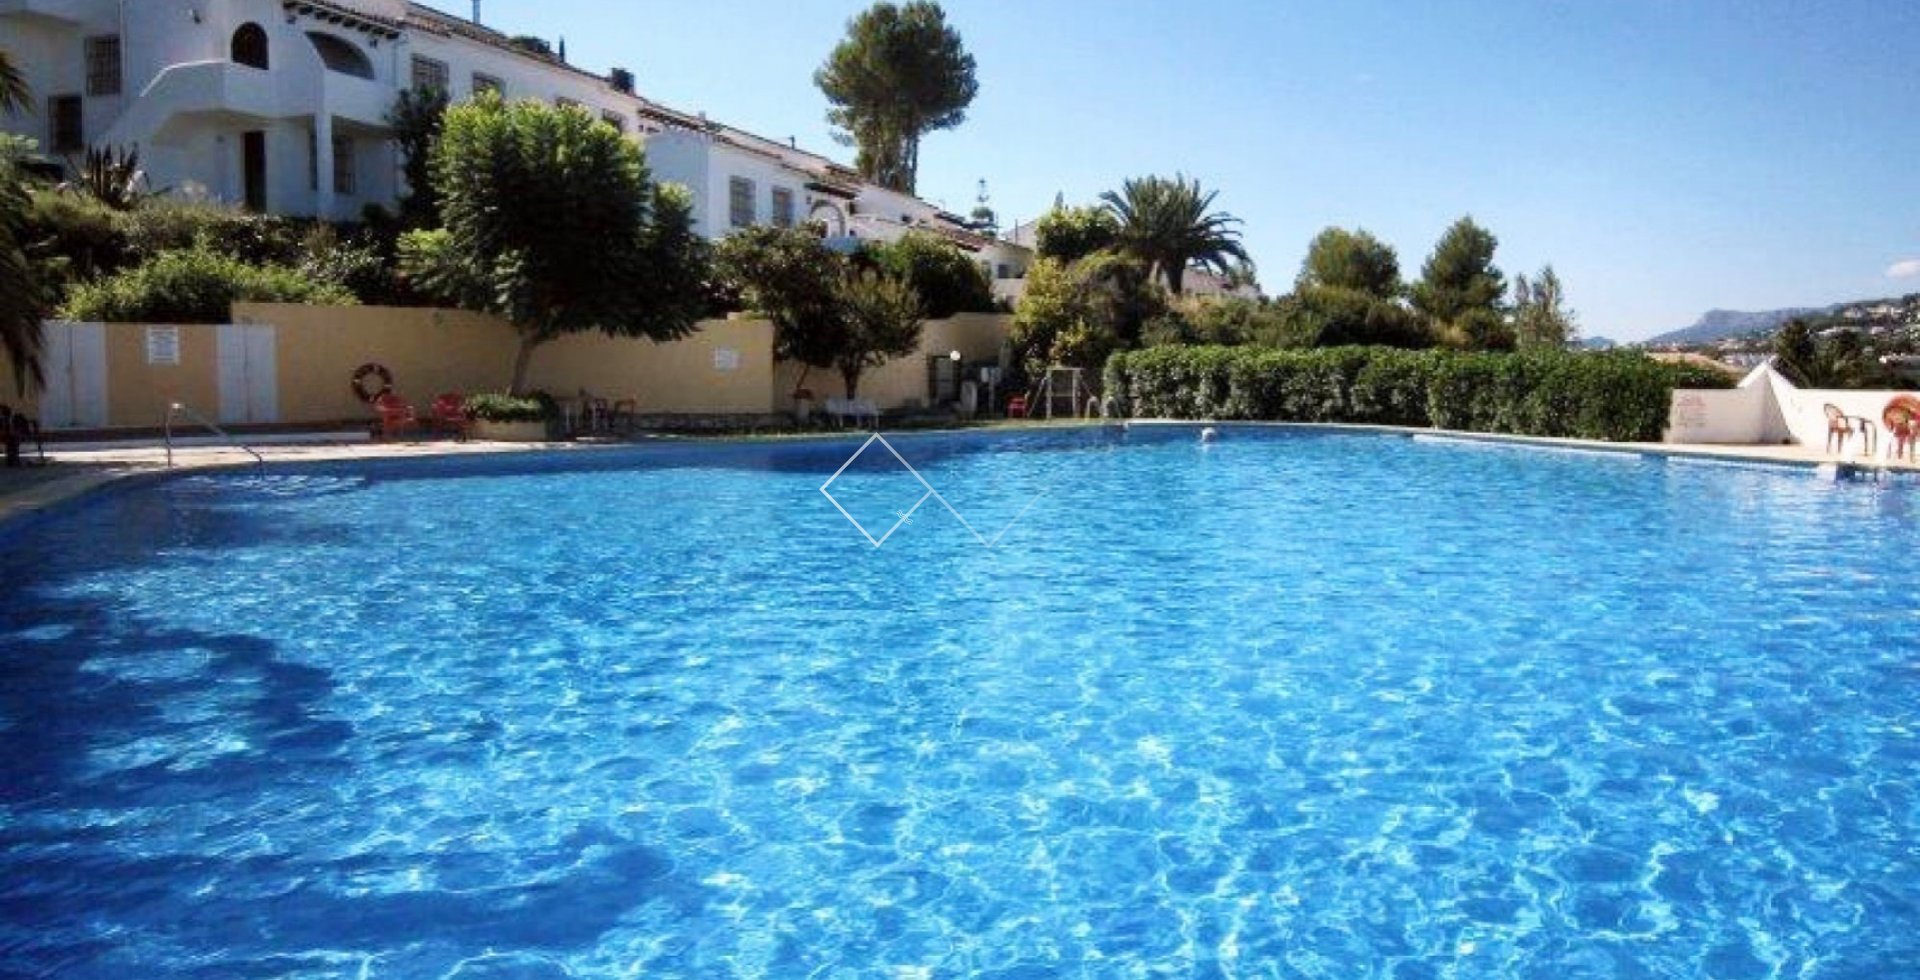 gemeenschappelijk zwembad - Appartement met verhuur licentie te koop in Villotel, Moraira